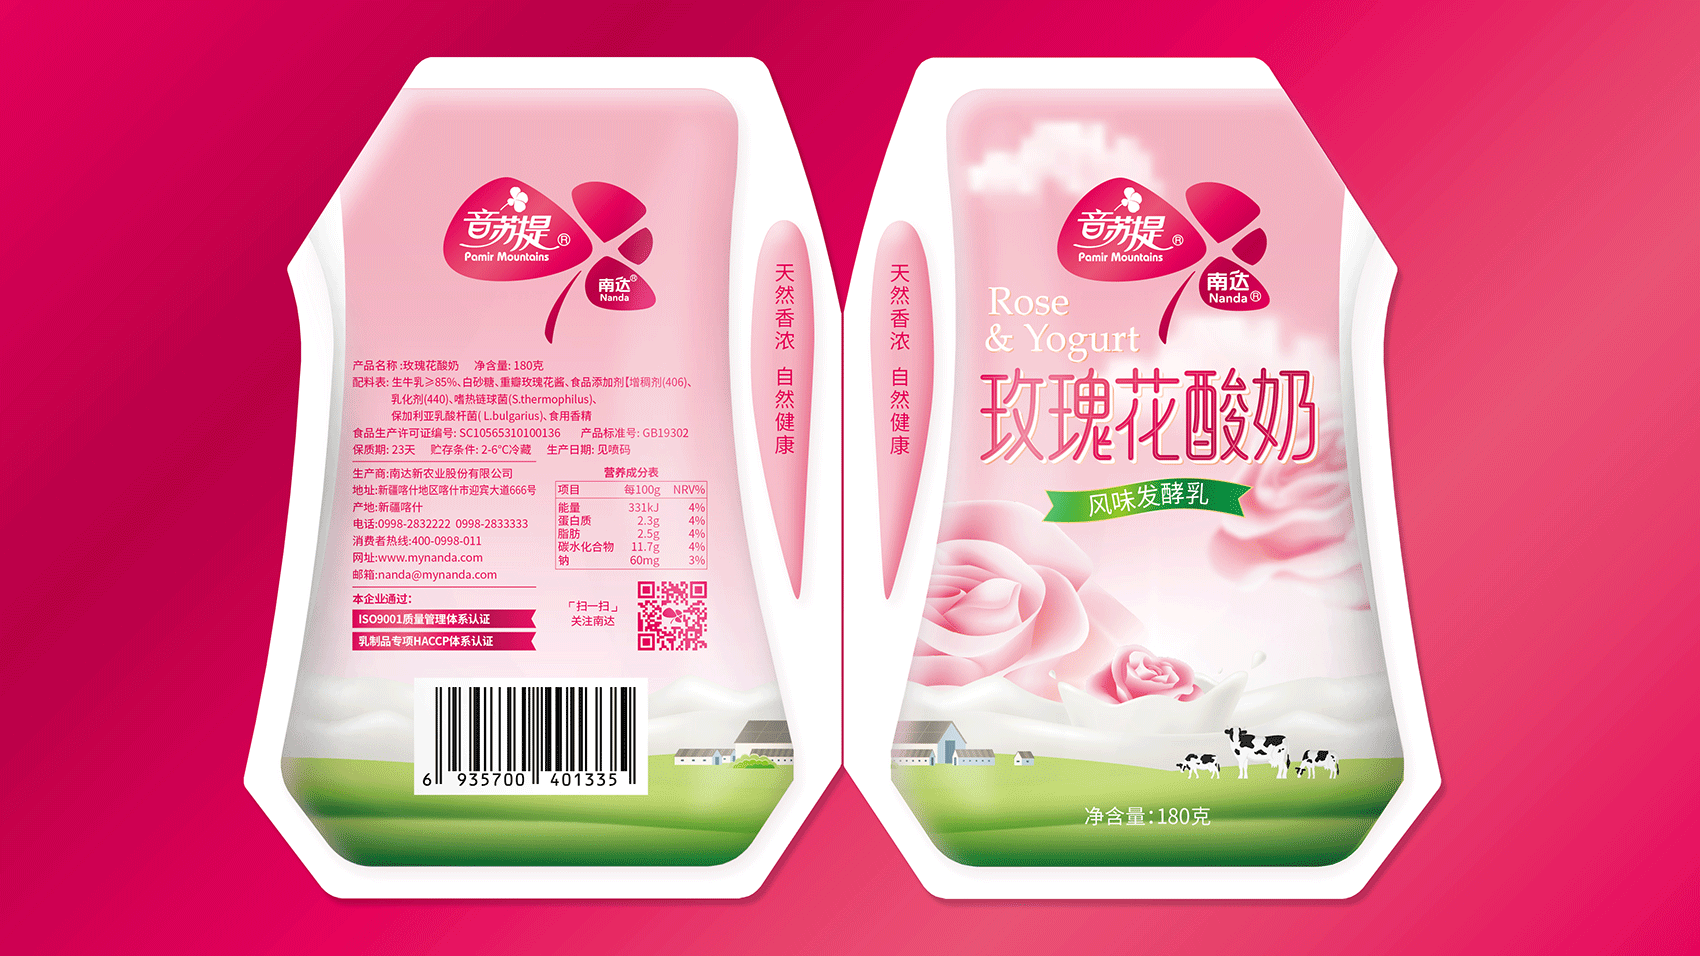 江阴这家24小时内必须吃完的酸奶店 推出了中秋限定款：飘香桂花_洛斯